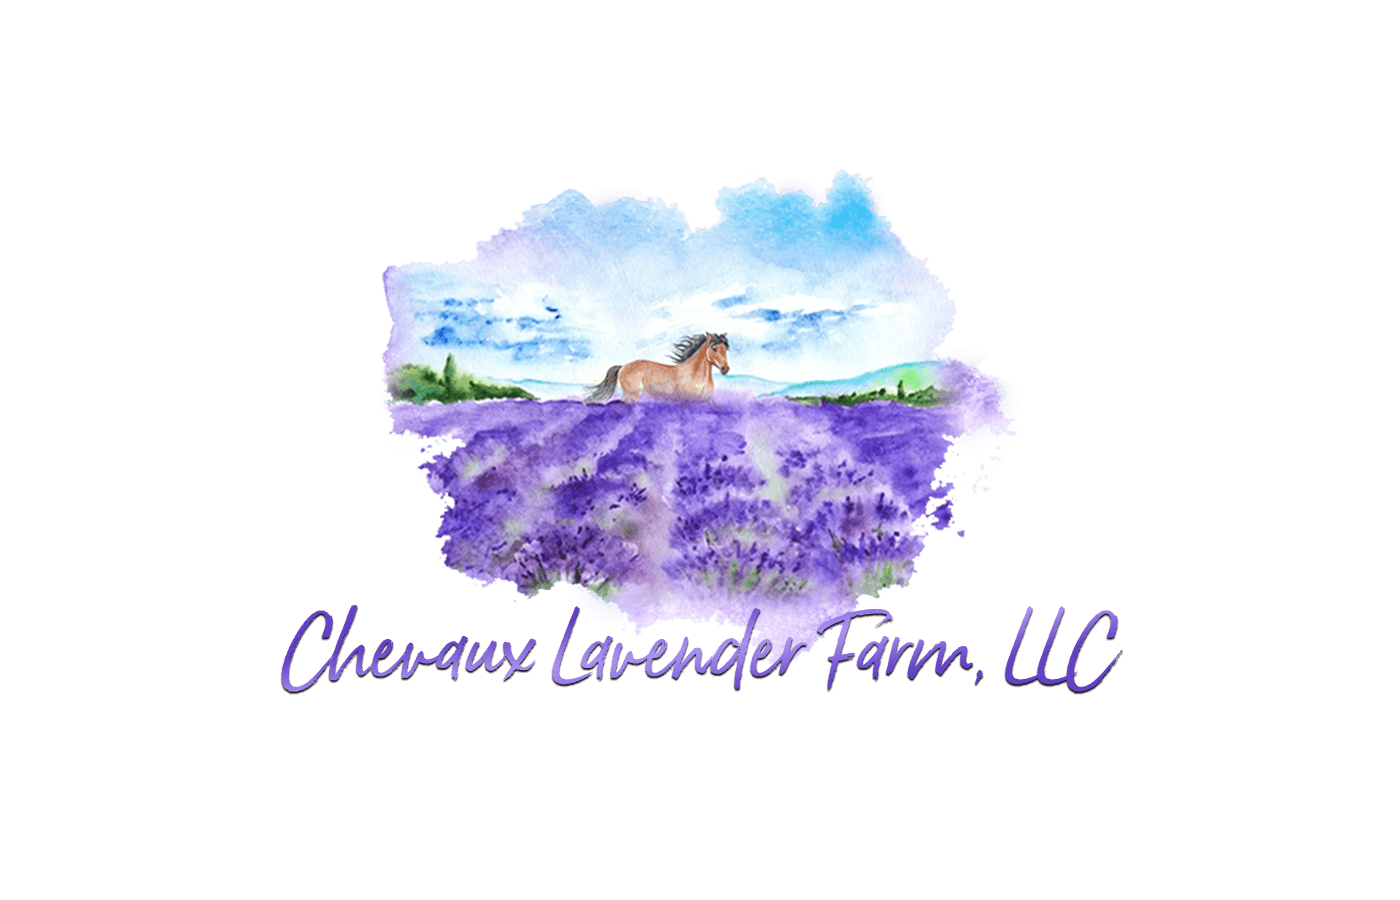 Chaveaux Lavender Farm LLC